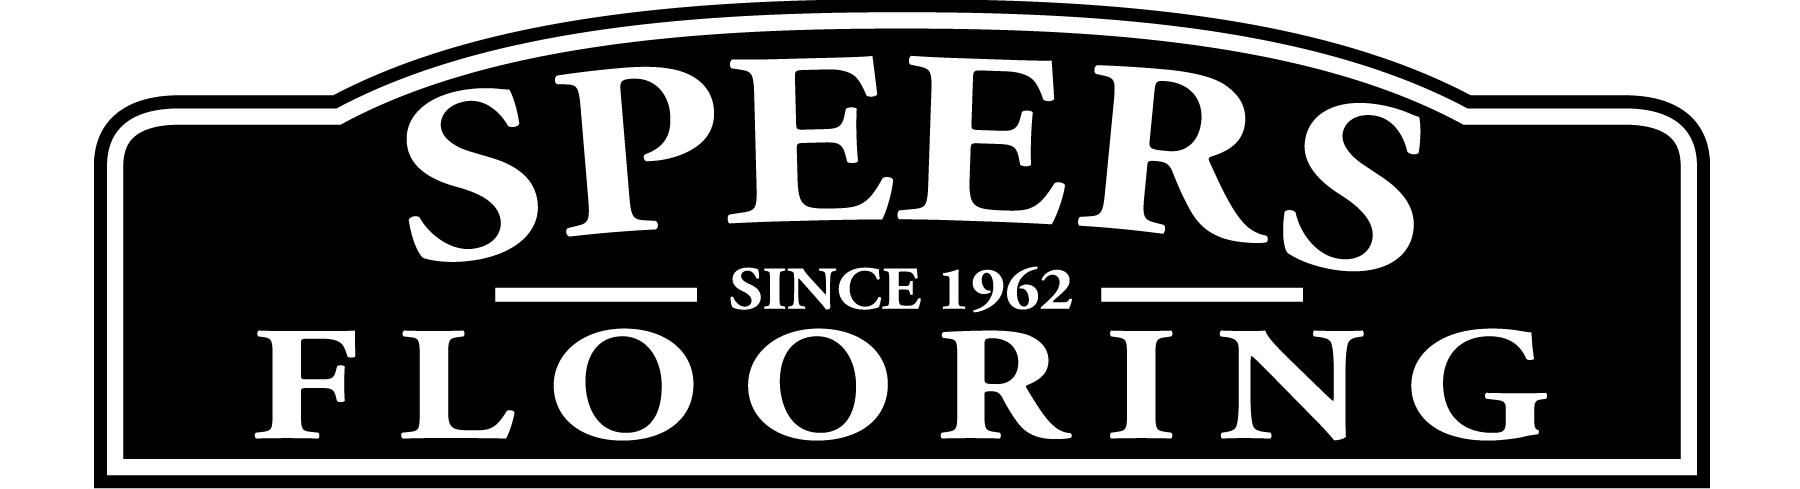 Speers Flooring's logo